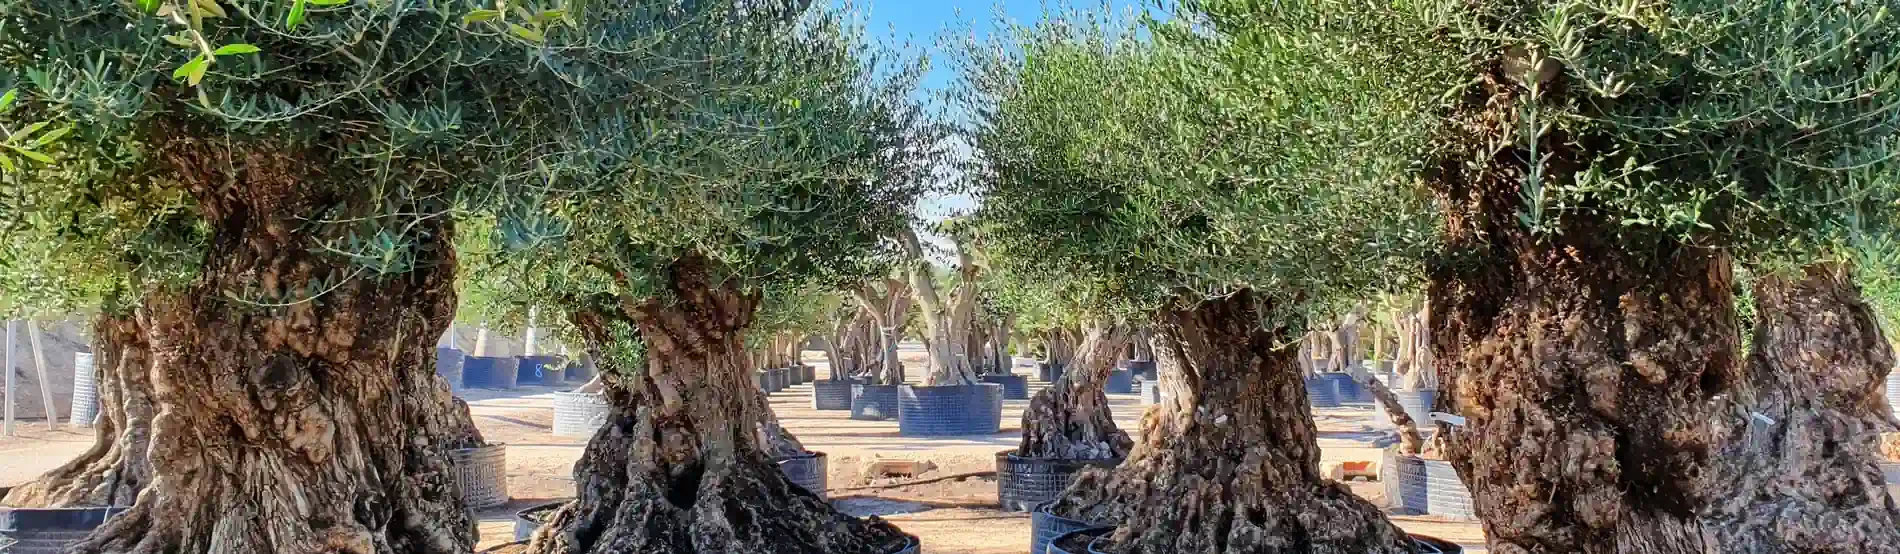 olivenbaum-bonsai_mit_knorrigem_stamm_und_grosser_grünen-krone